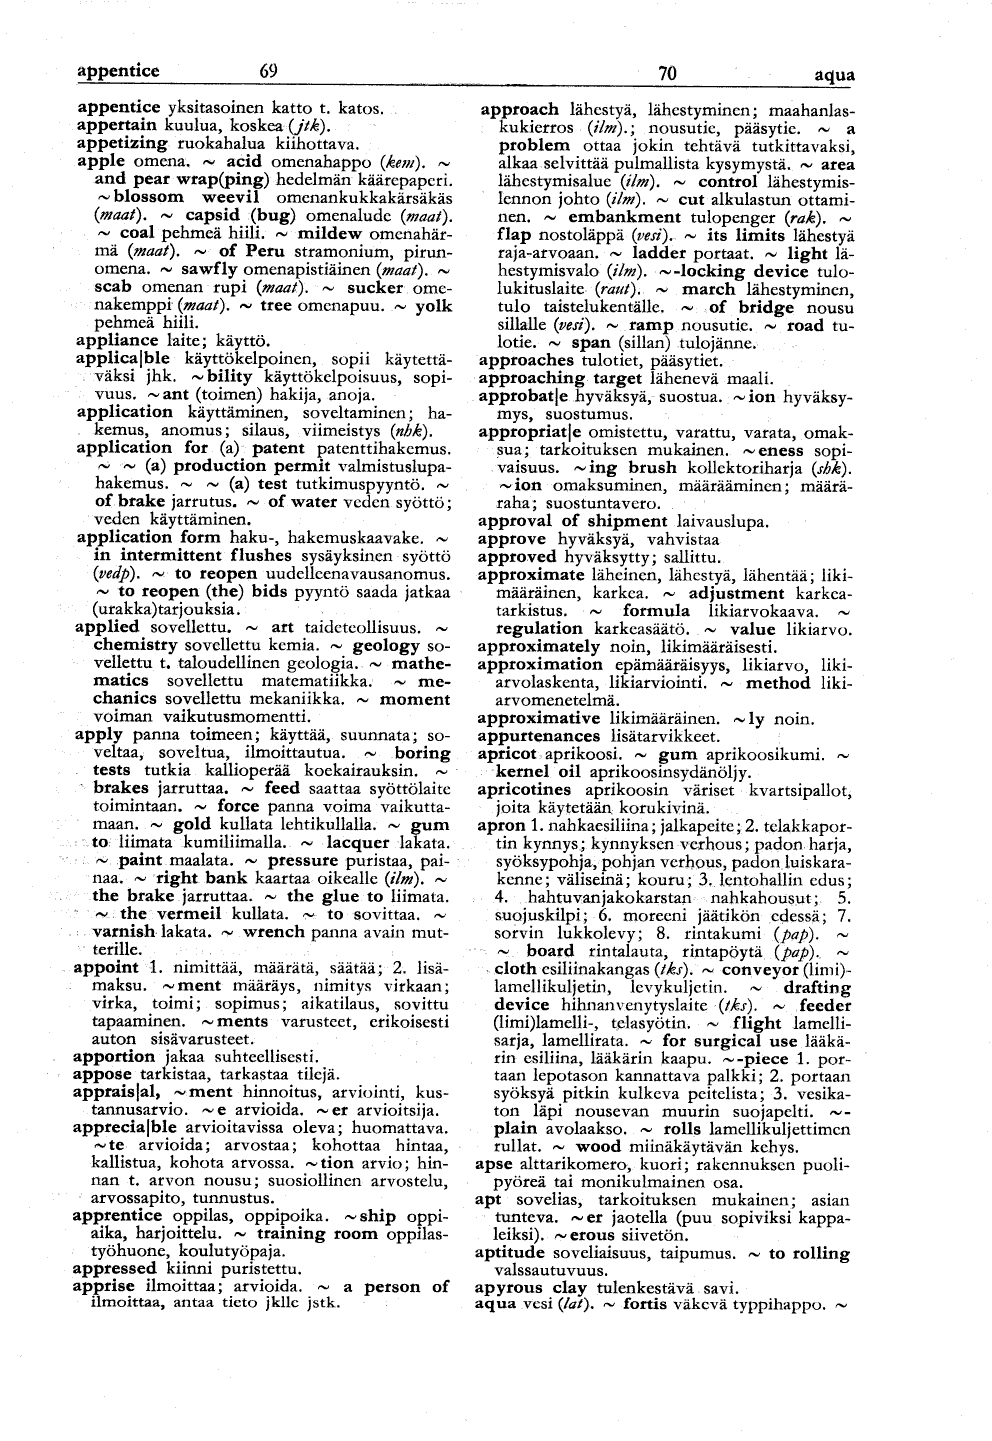 69-70 (Englantilais-suomalainen tekniikan ja kaupan sanakirja)